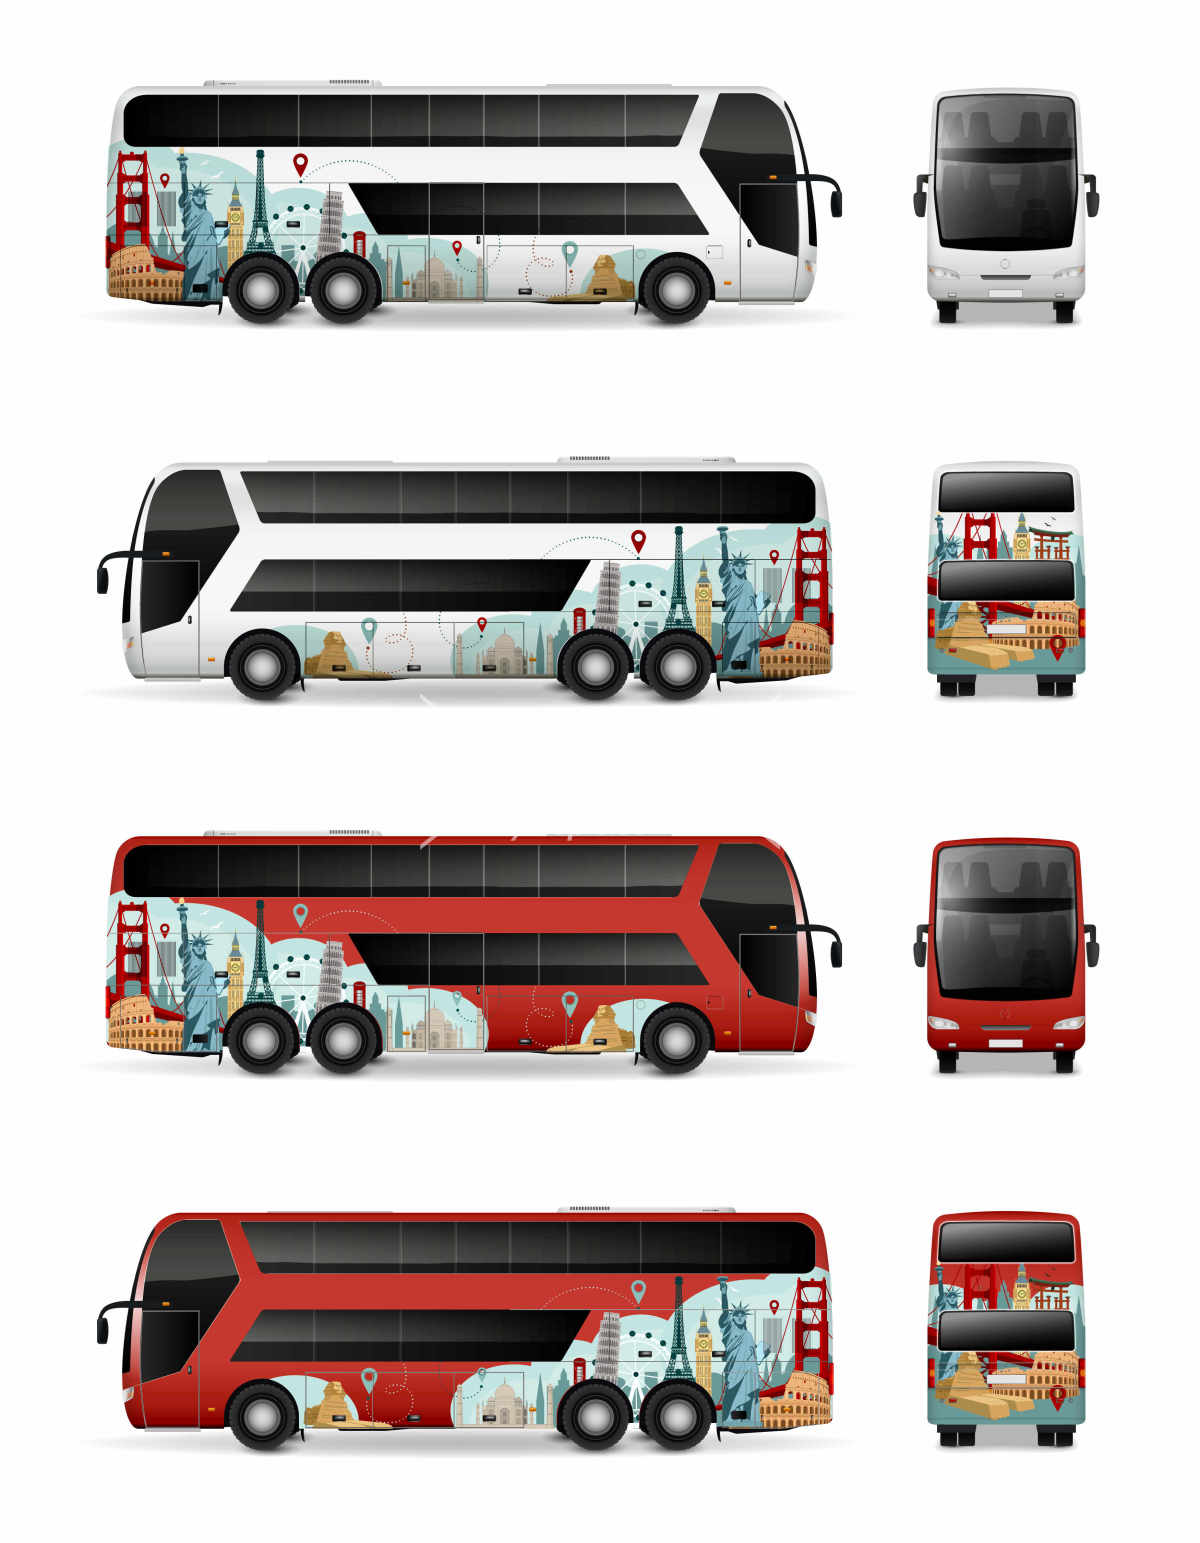 旅游巴士车身设计